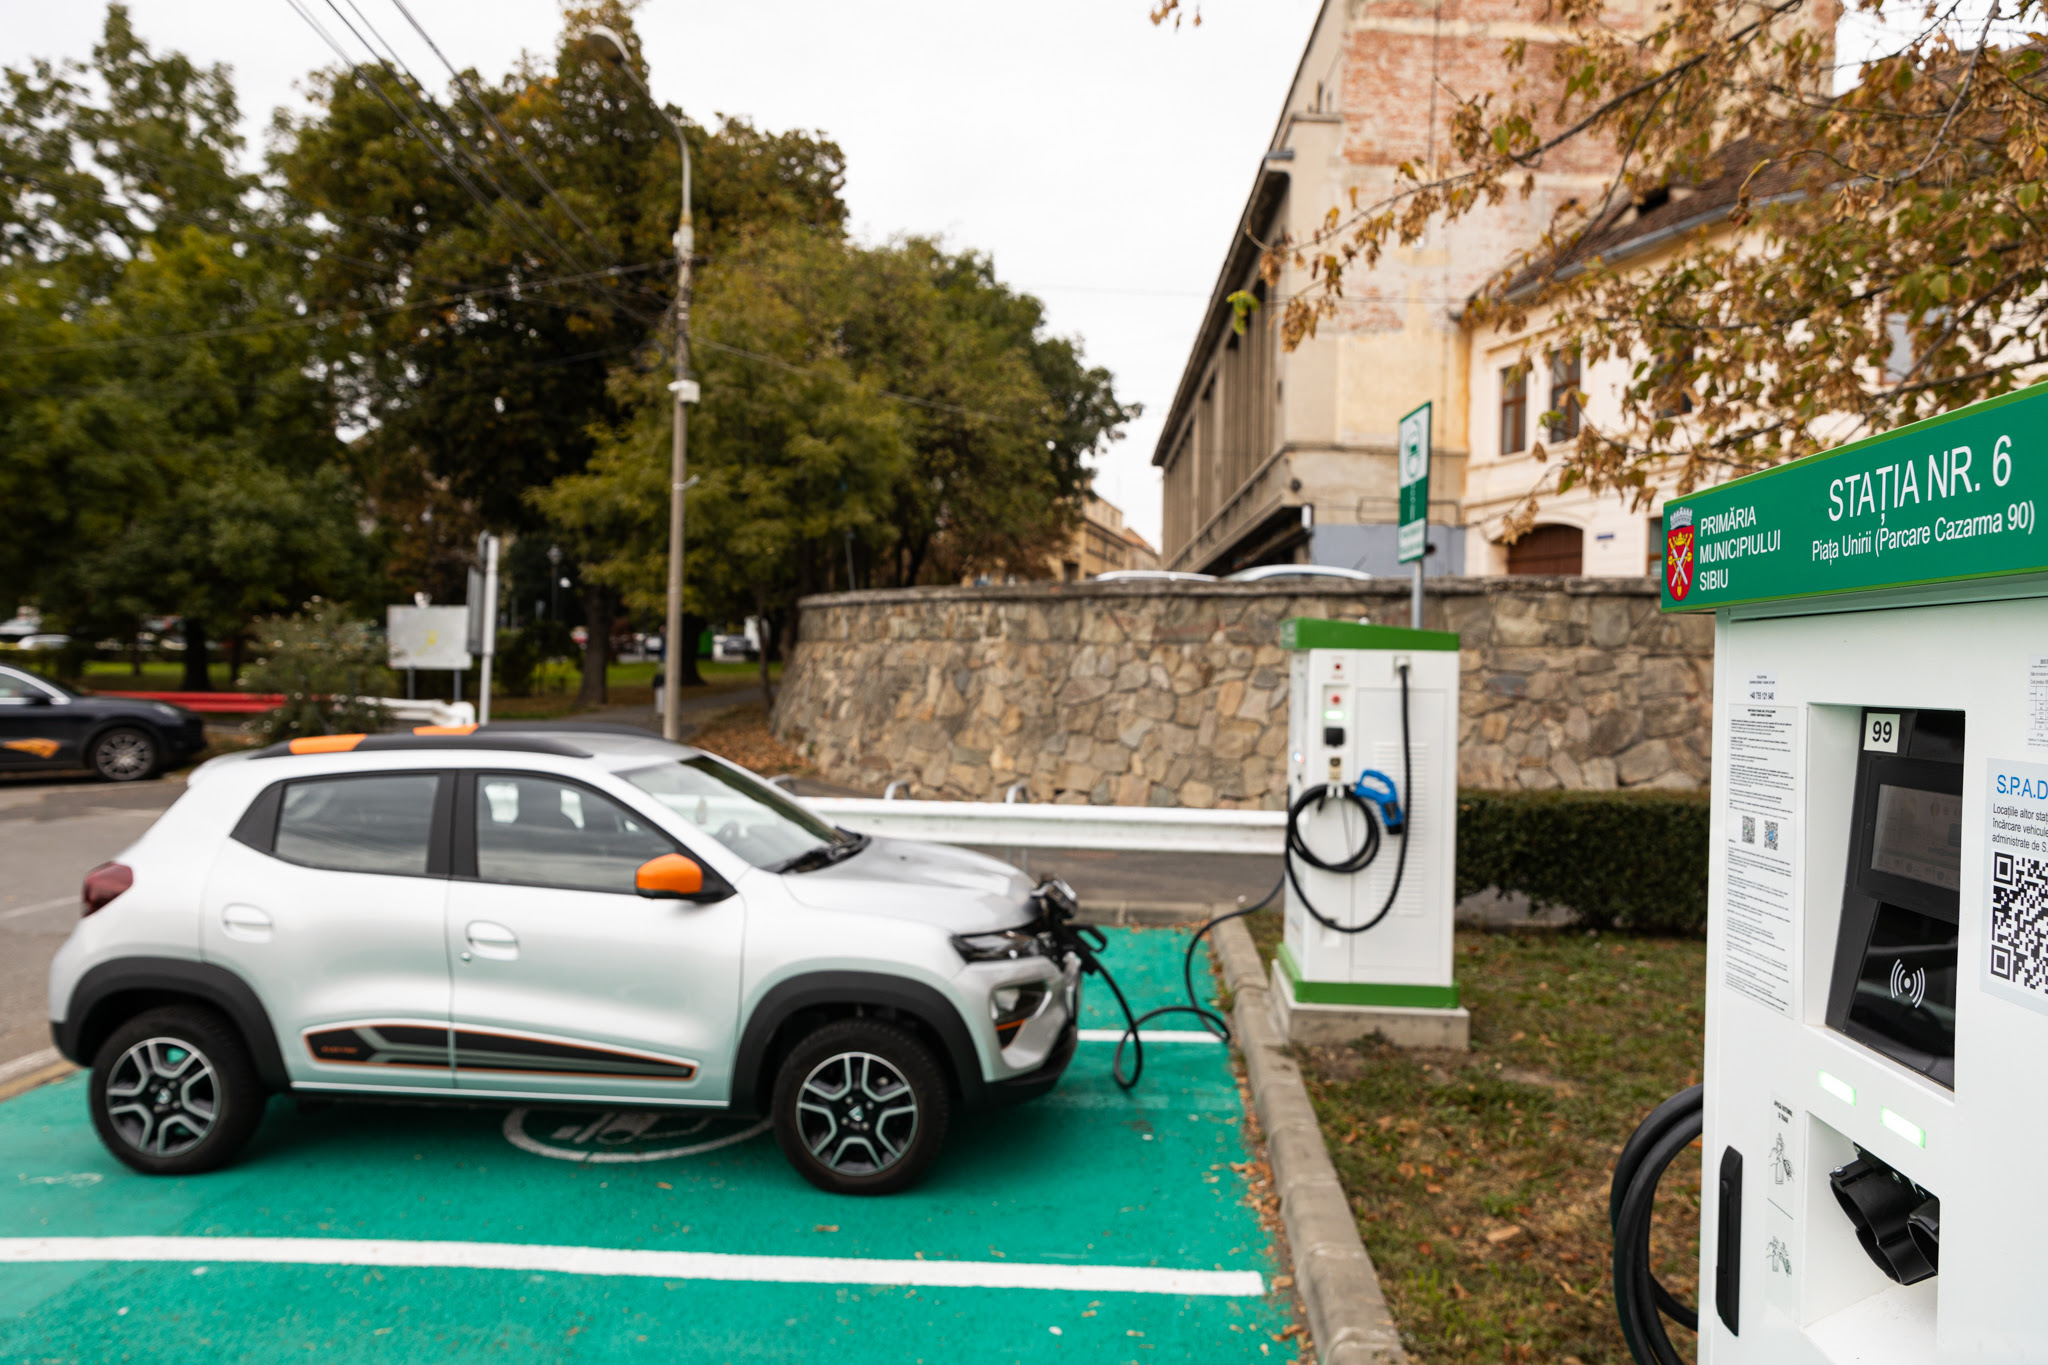 Primăria Sibiu a finalizat instalarea a 10 stații publice de încărcare a autovehiculelor electrice în 8 locații din Sibiu și le-a pus în funcțiune vineri, 13 octombrie: